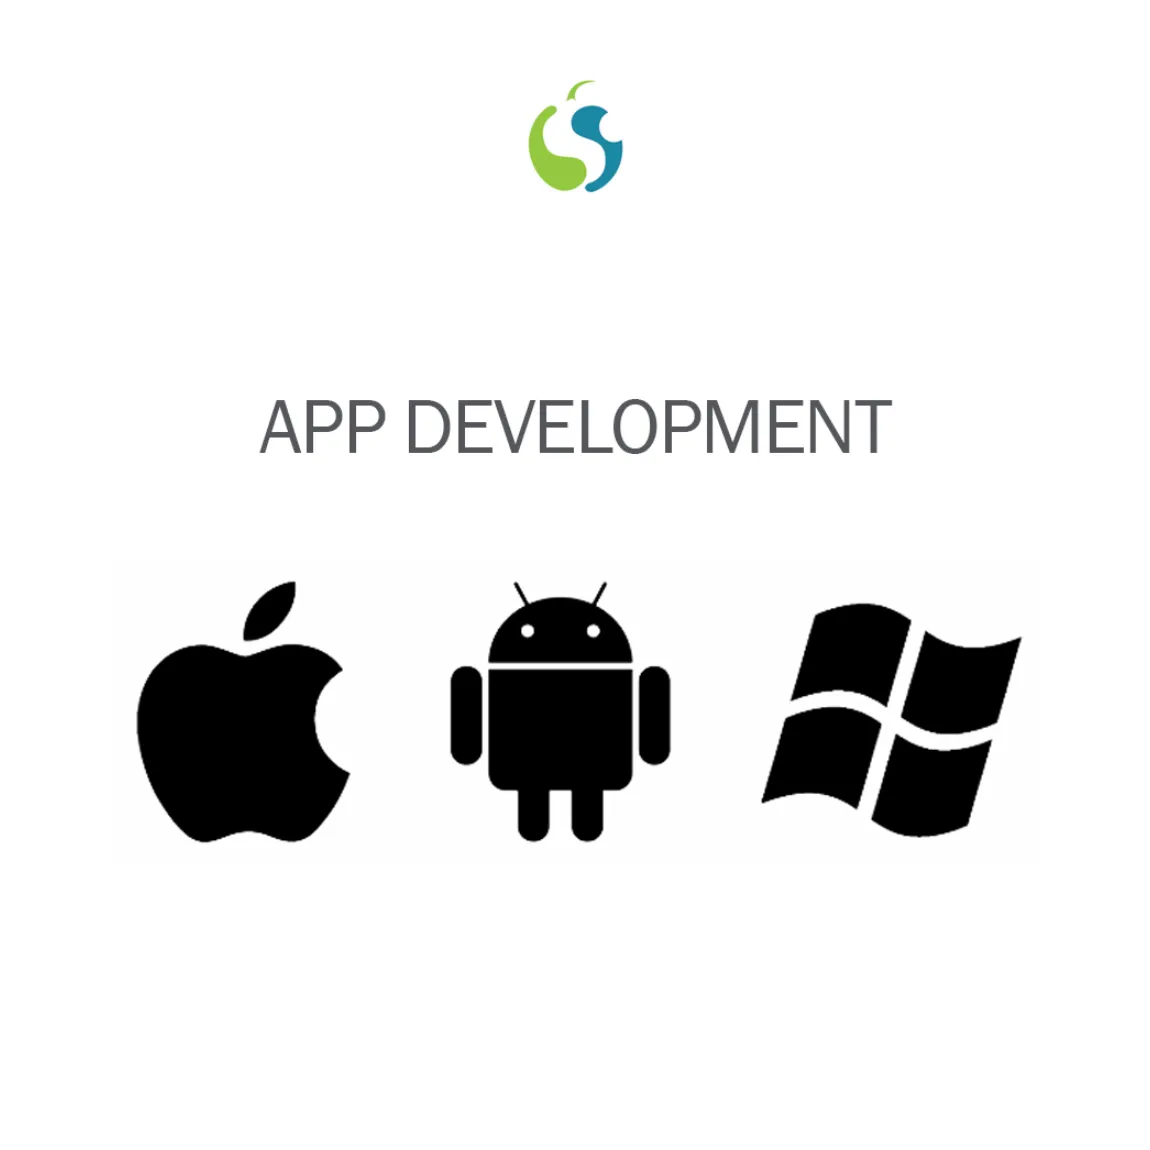 효과적인 디자인을 위해 최신 기술과 도구를 사용하는 인도의 고도로 기능적인 강력한 앱 개발 서비스 제공 업체